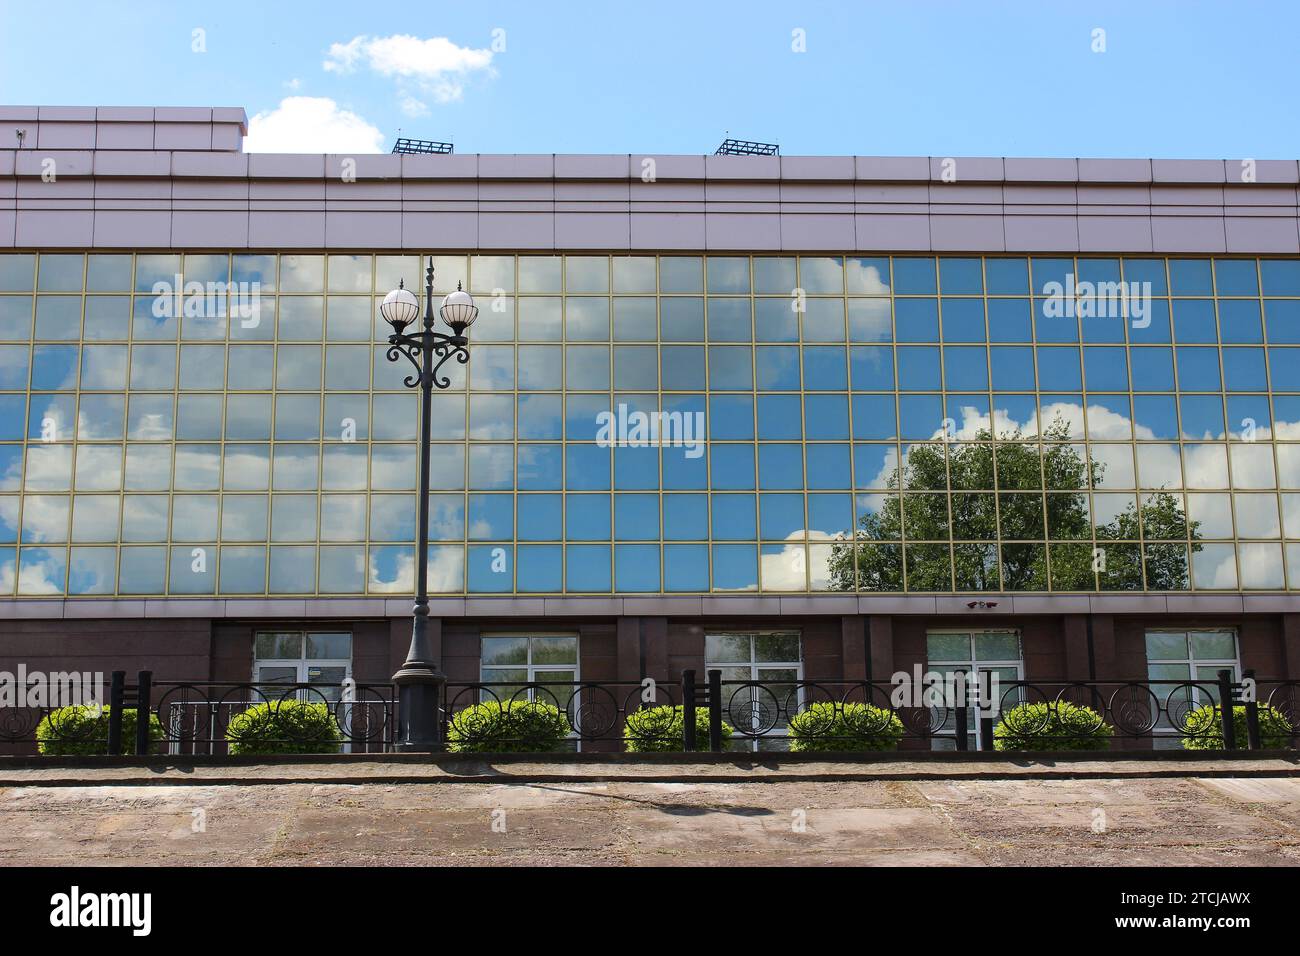 Arbre vert et nuages sur Un ciel bleu se reflète dans le mur de verre miroir de l'immeuble de bureaux avec des buissons verts devant lui Banque D'Images